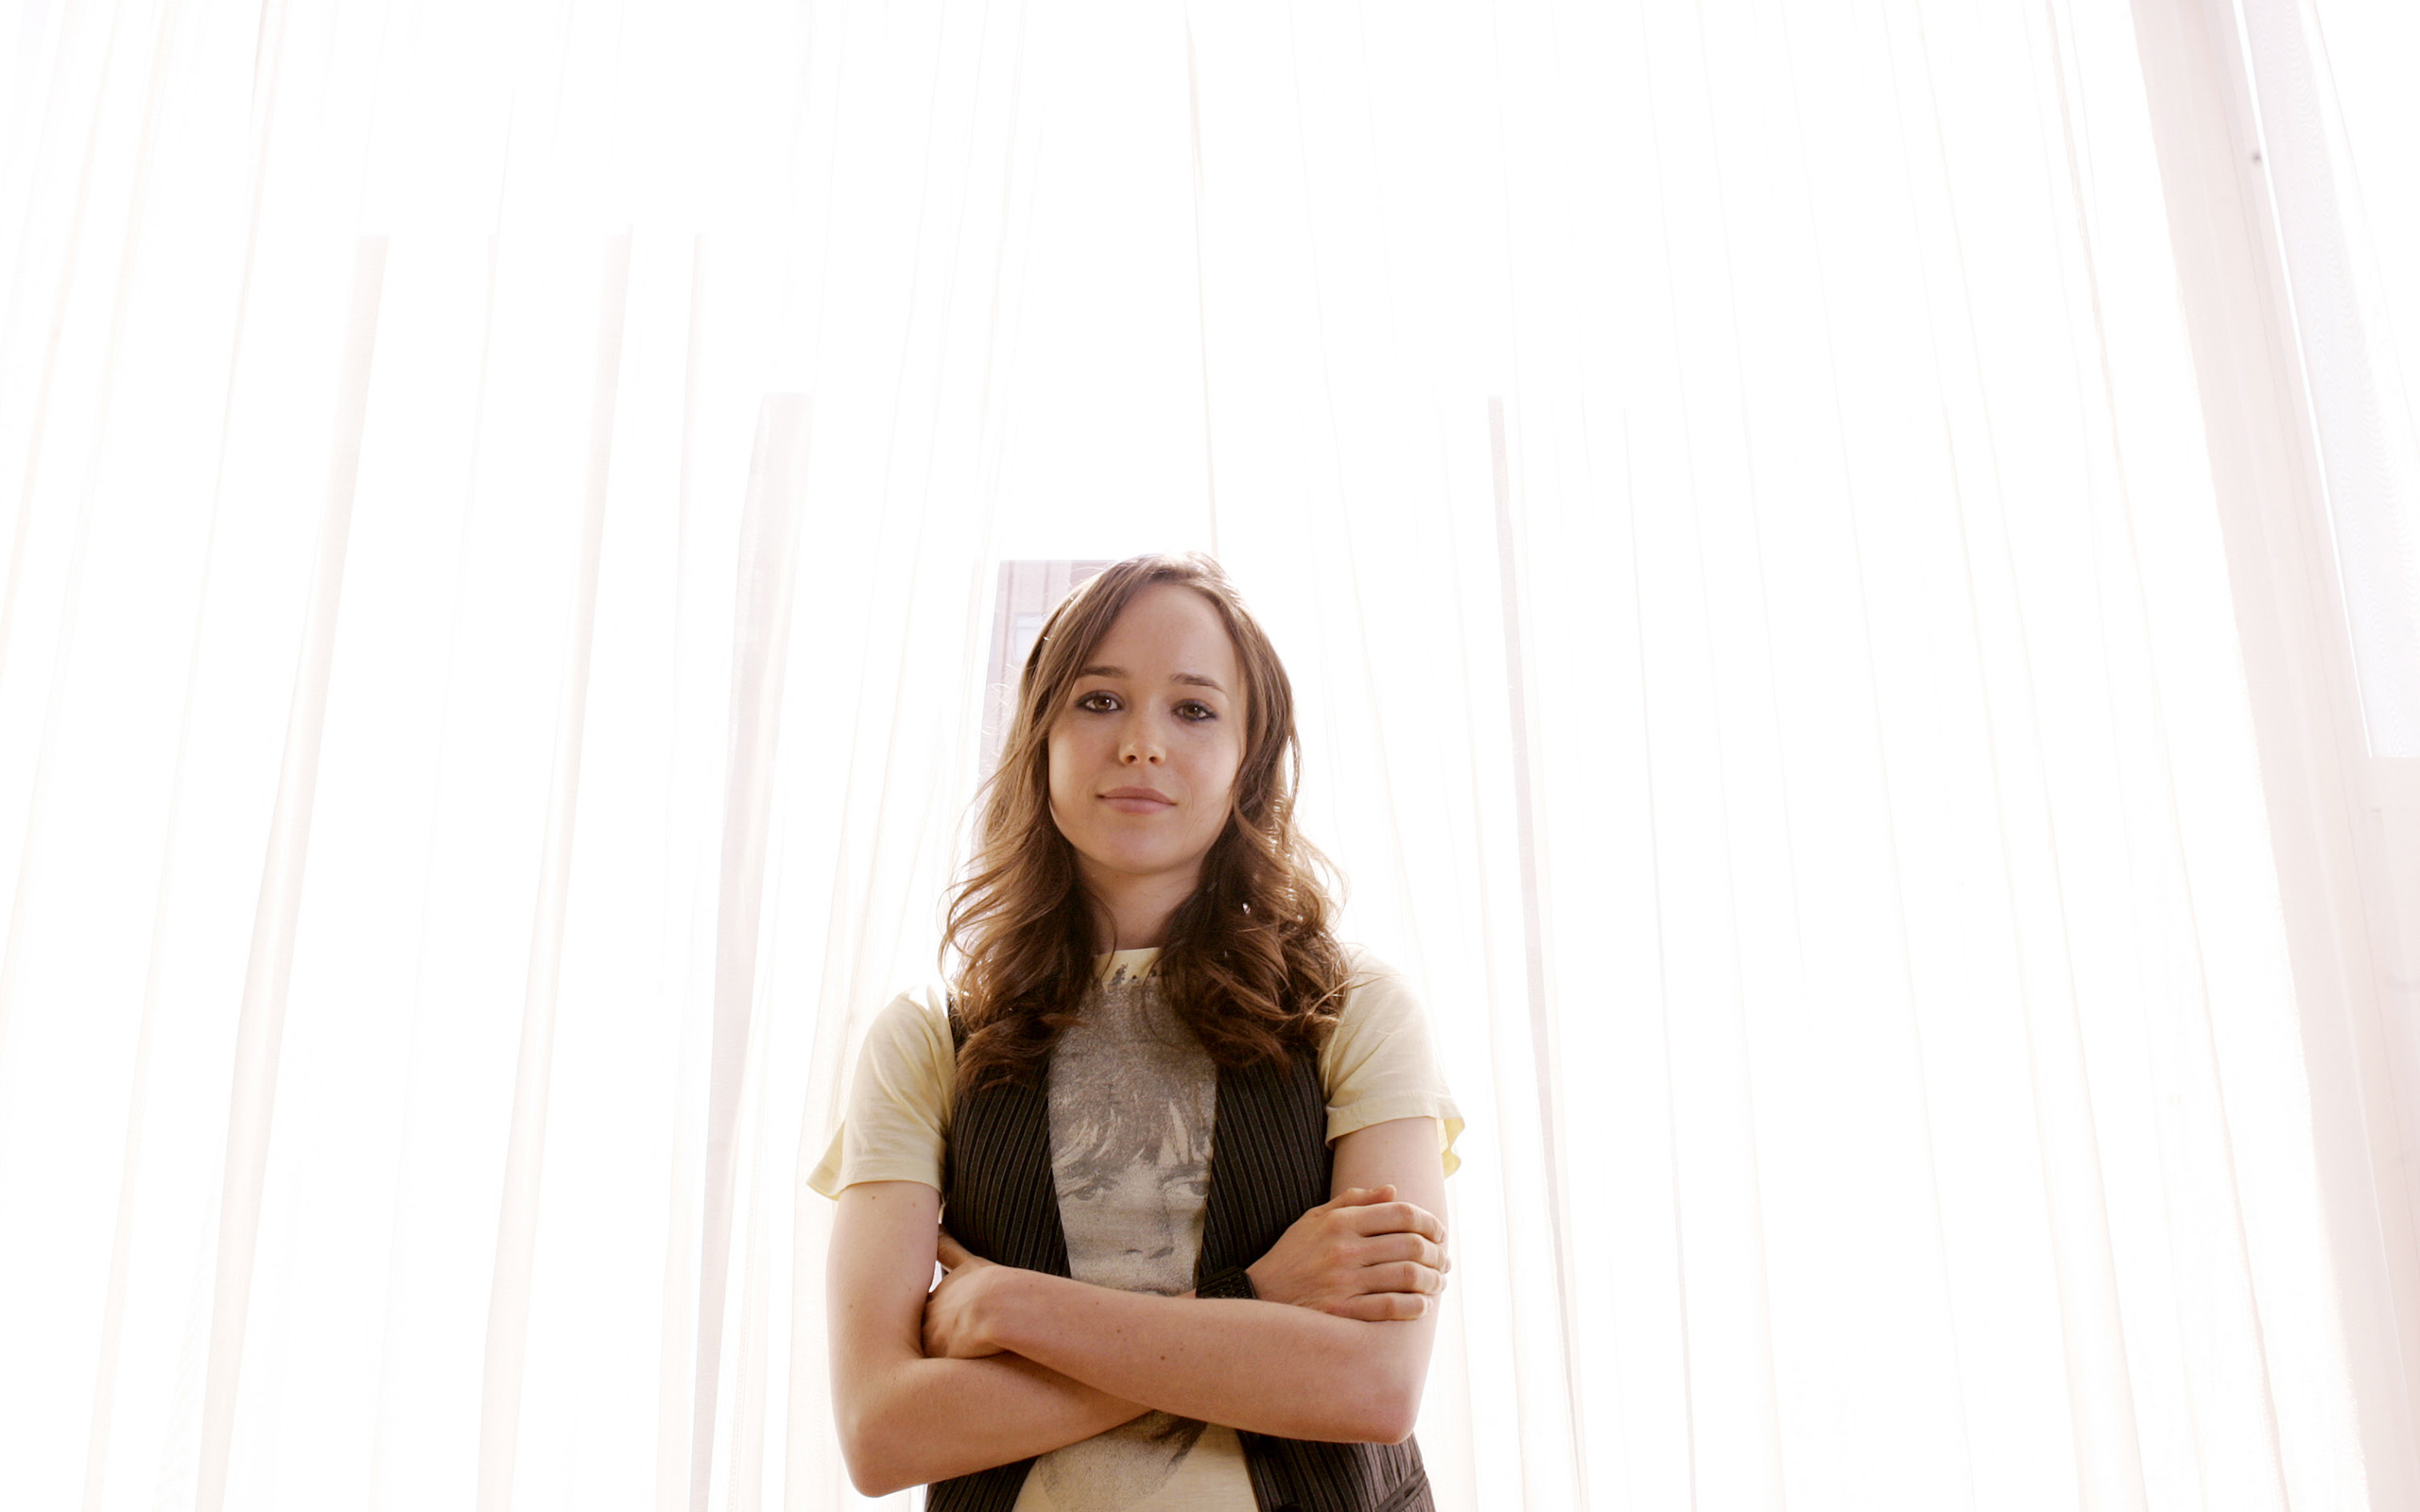 Ellen Page 2018 Wallpapers